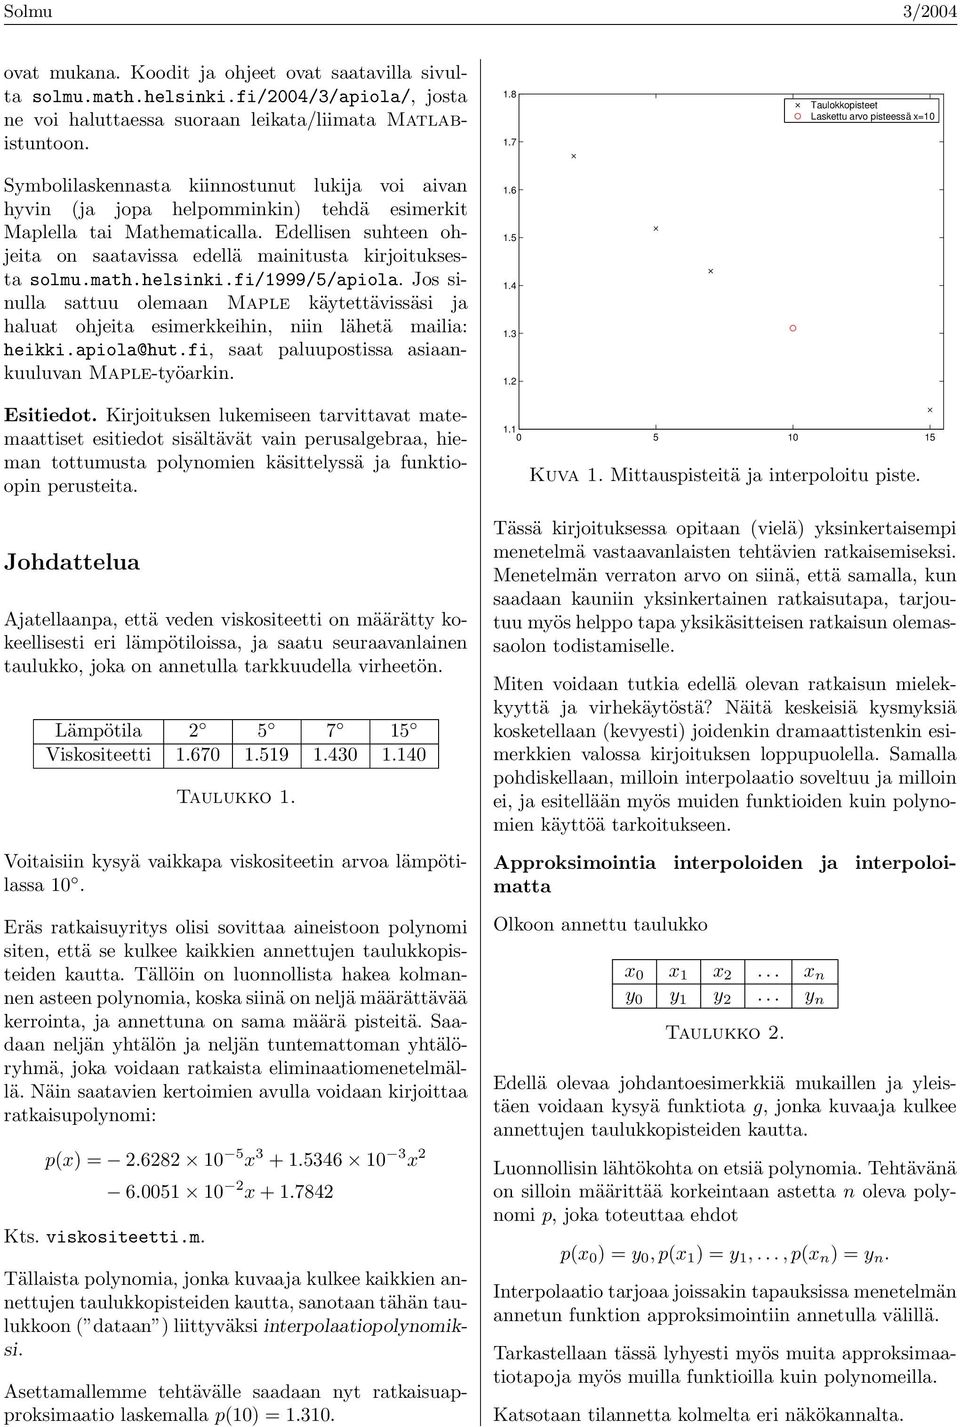 Edellisen suhteen ohjeita on saatavissa edellä mainitusta kirjoituksesta solmu.math.helsinki.fi/999/5/apiola.